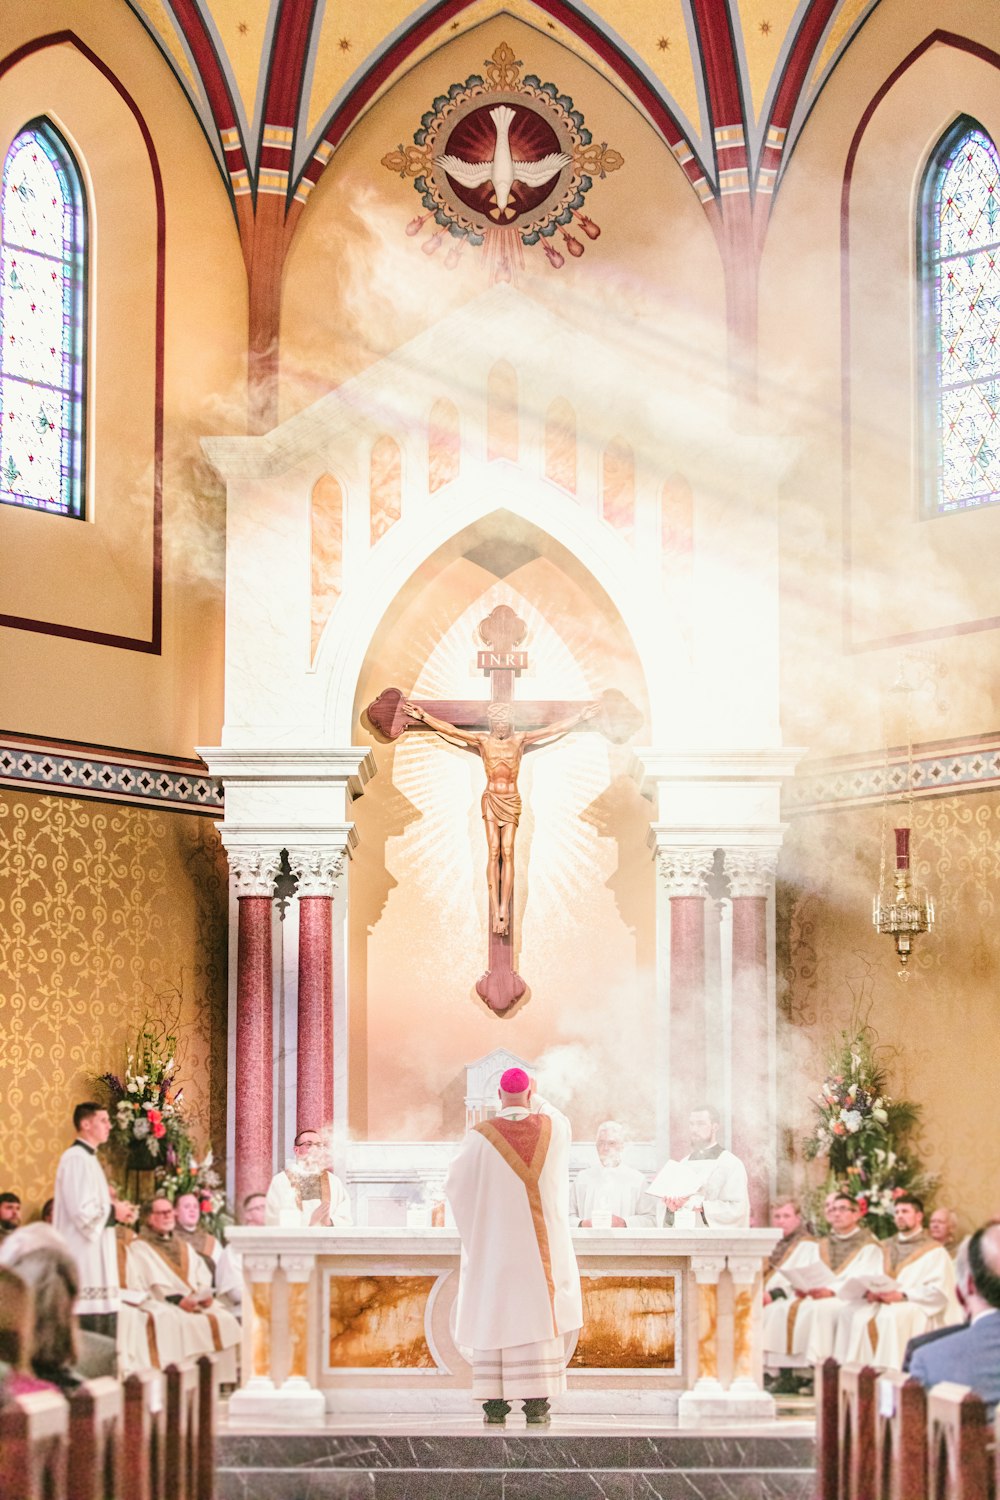 Un sacerdote de pie en el altar de una iglesia